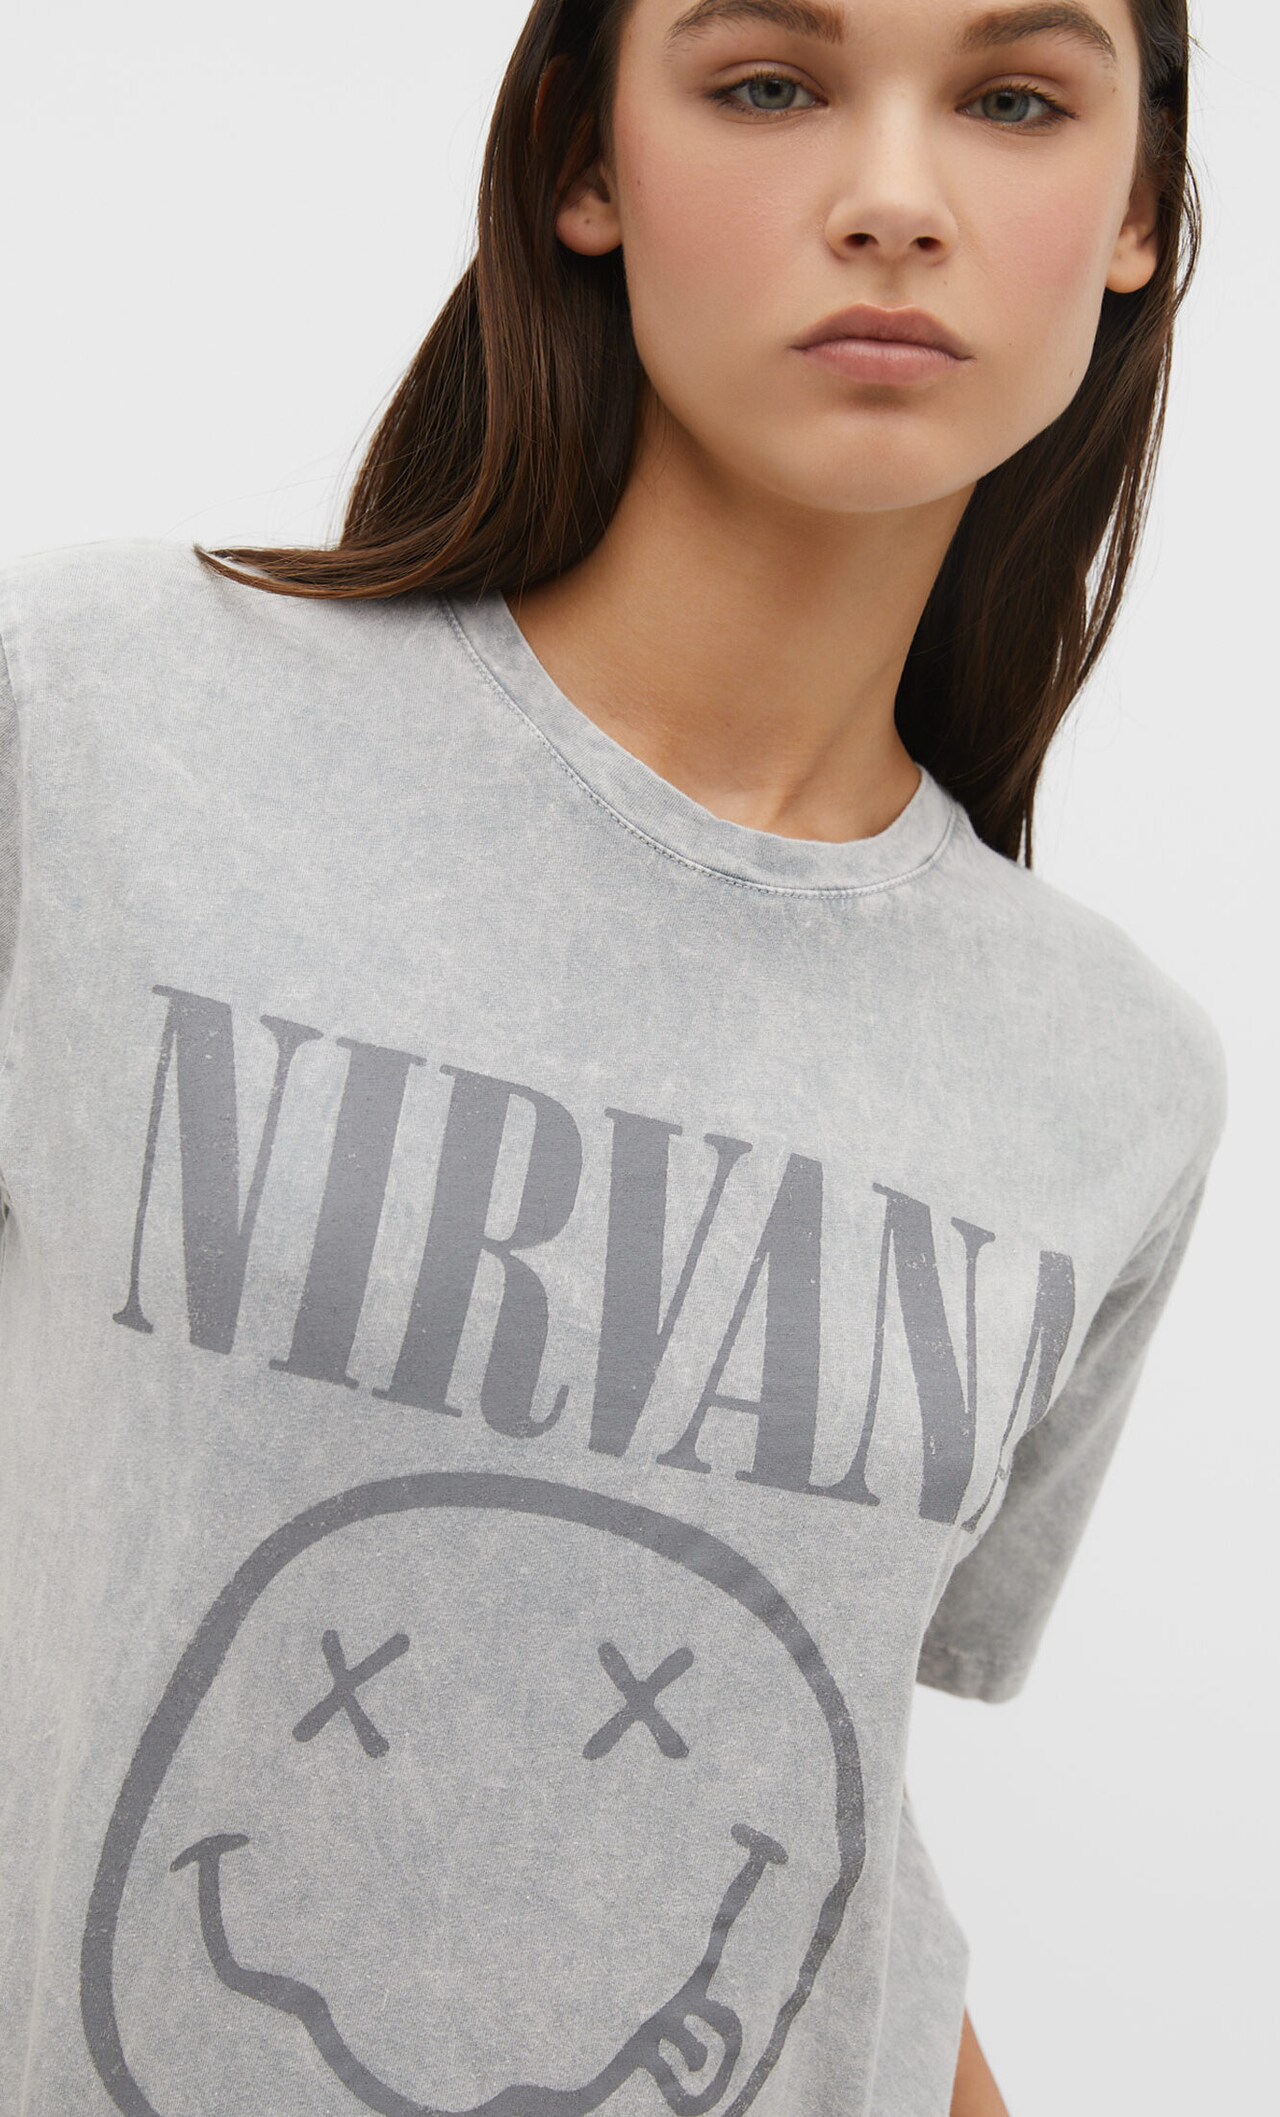 Reproduceren Eik Oceaan T-shirt met Nirvana-gezicht - Mode voor dames | Stradivarius België /  Belgique